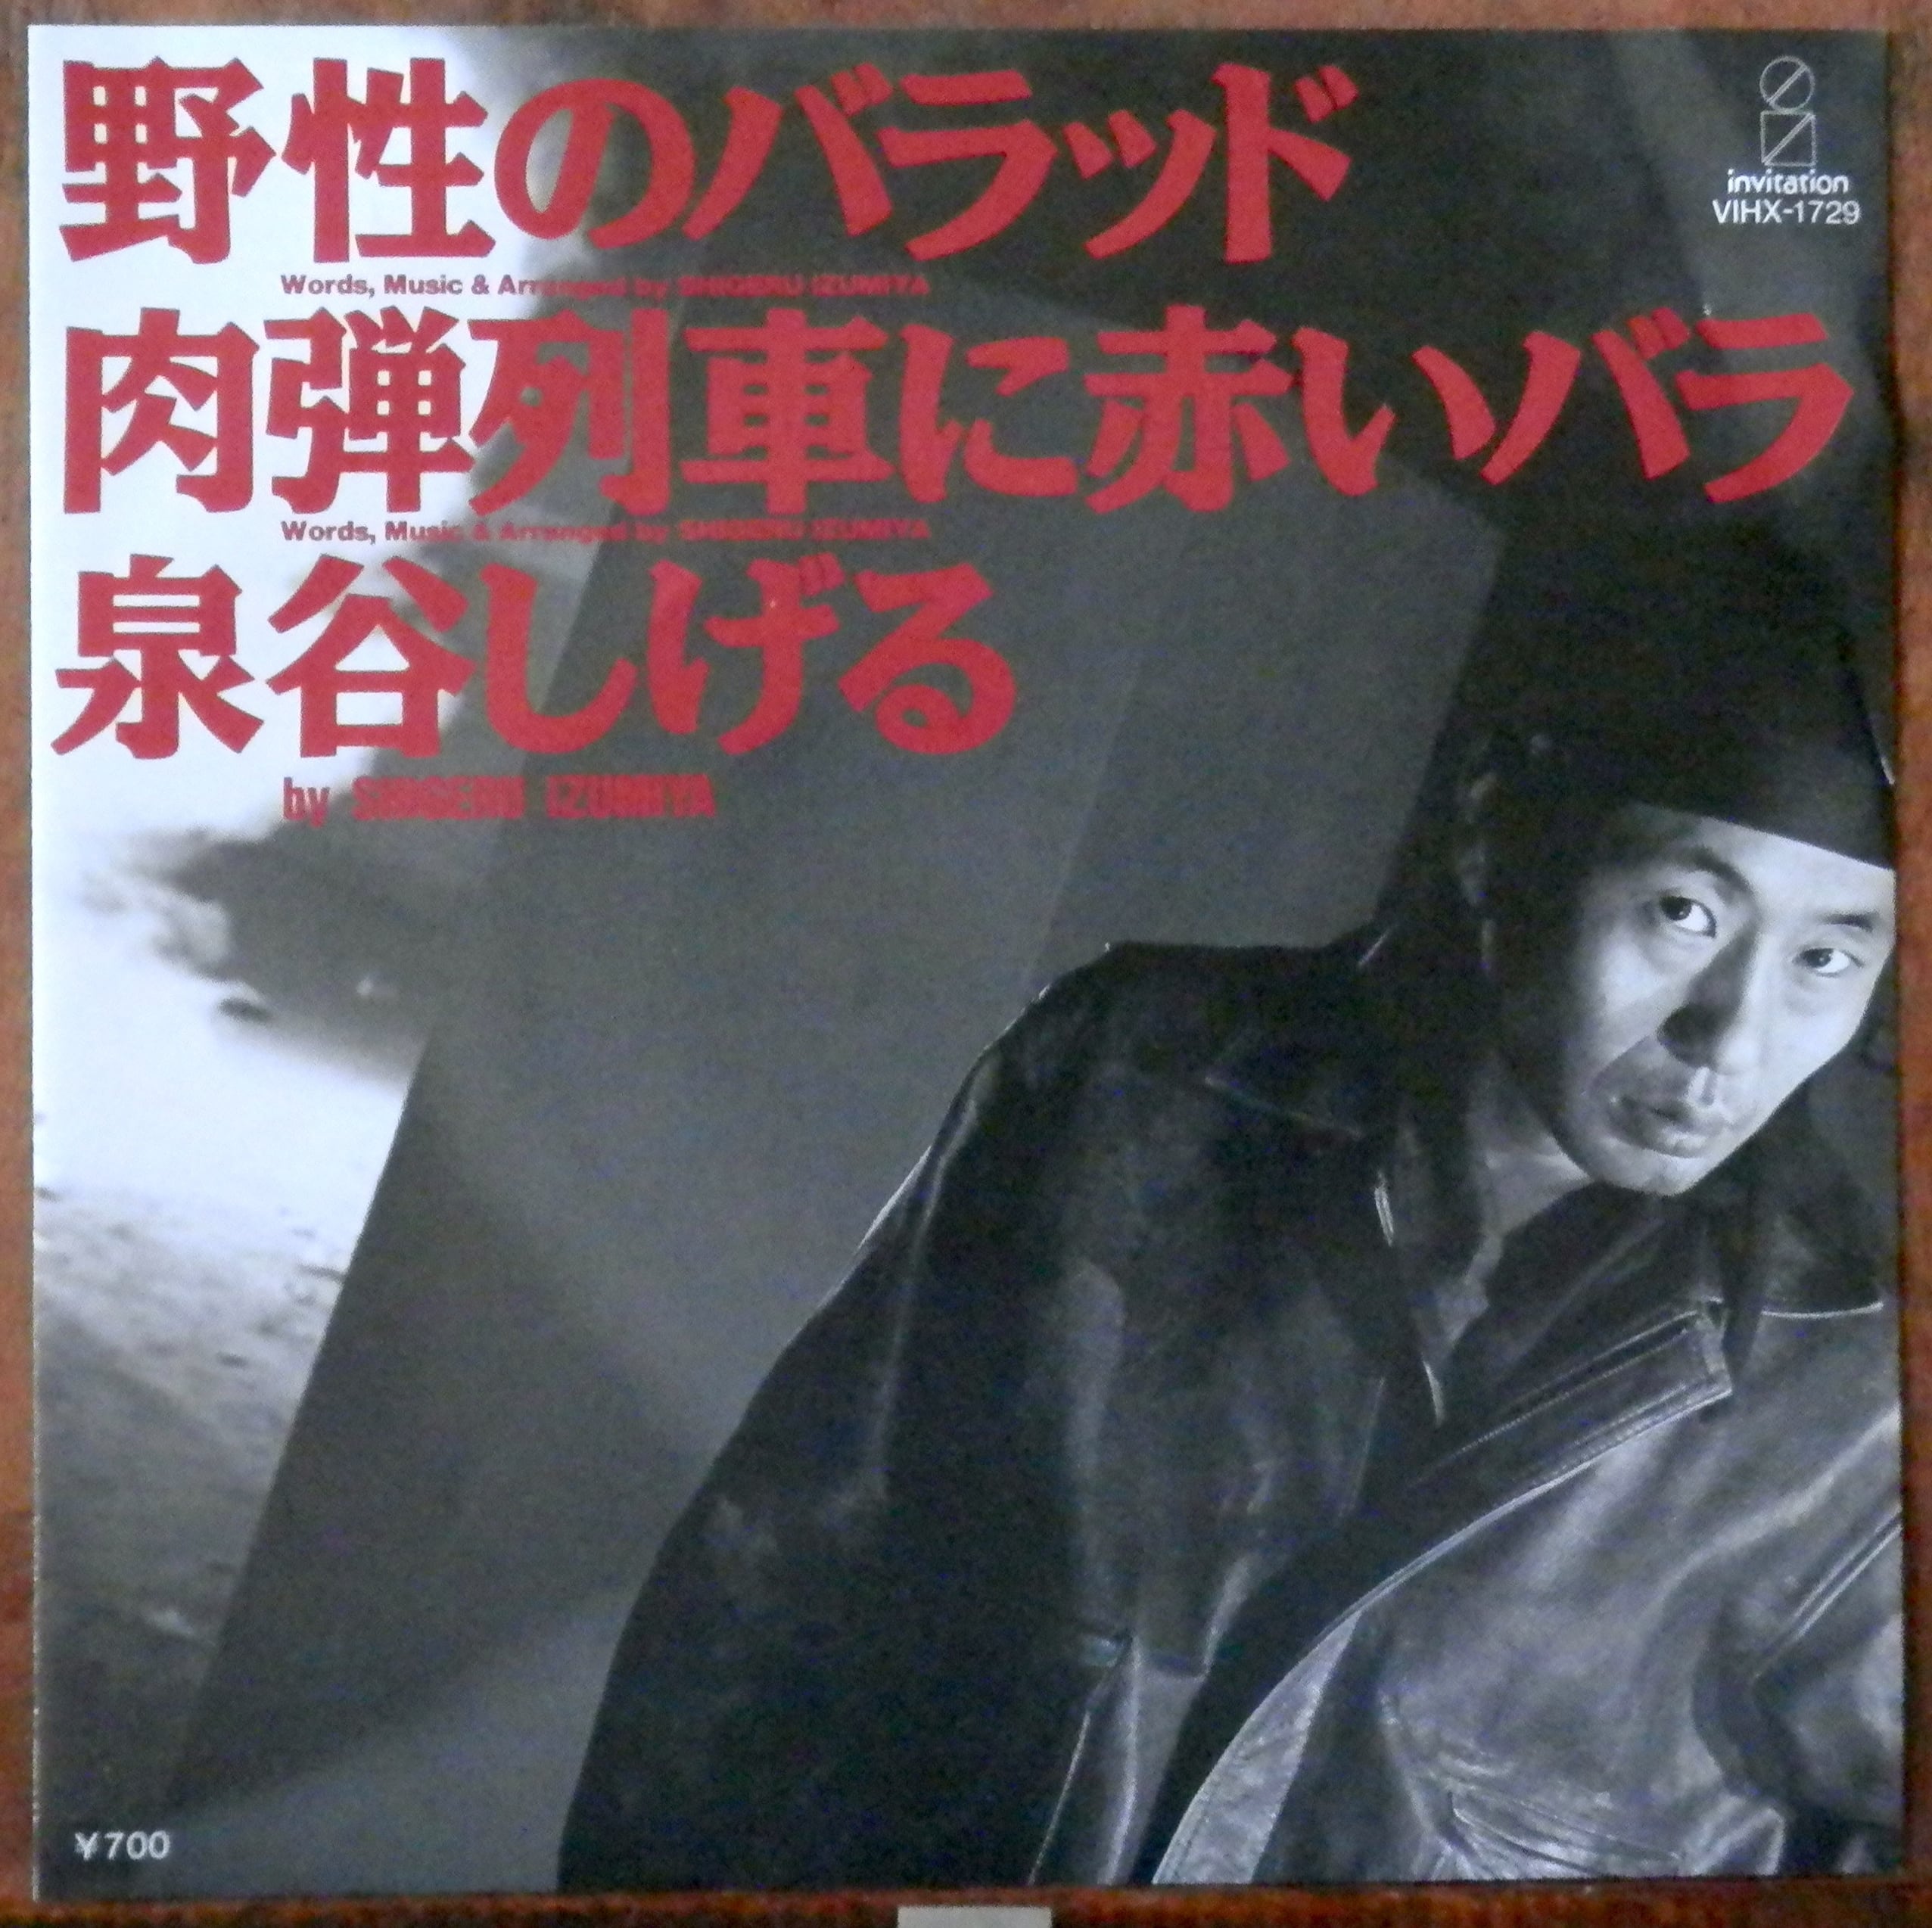 '87【EP】泉谷しげる 野生のバラッド 音盤窟レコード